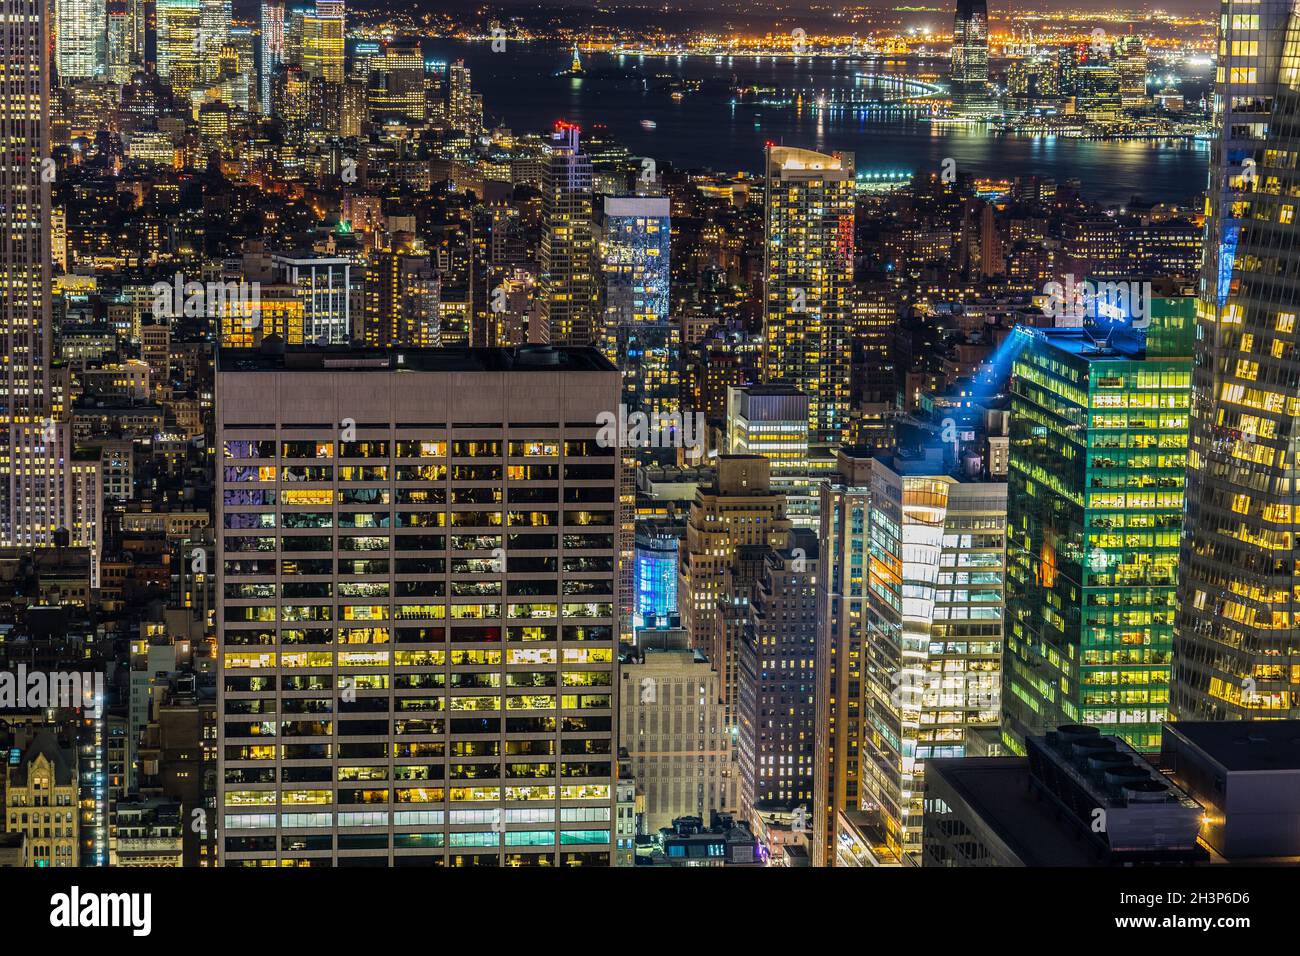 Vista nocturna del centro desde lo alto de la Roca (Plataforma de observación del Rockefeller Center) Foto de stock